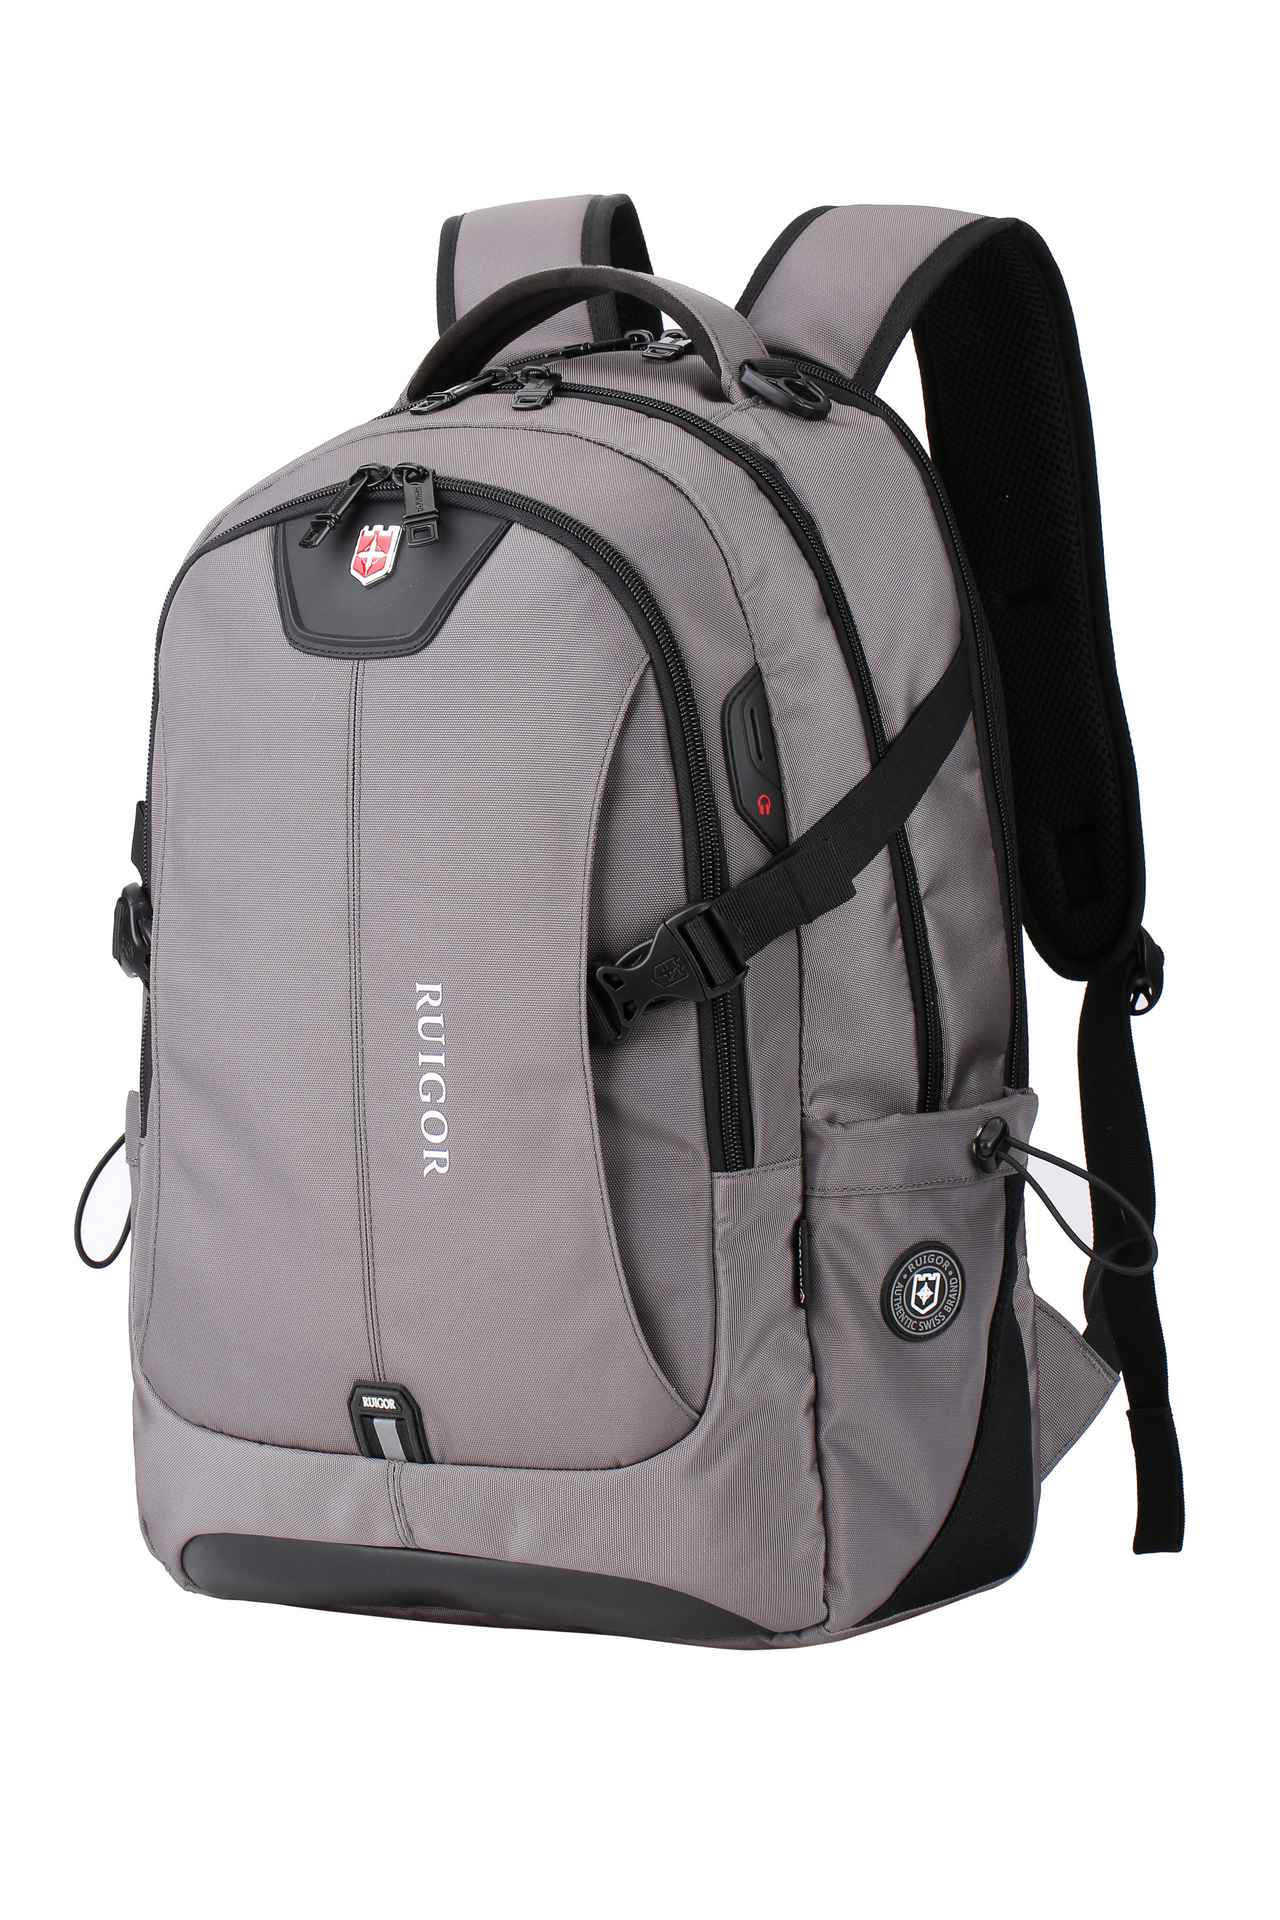 RUIGOR ICON 47 Laptop Backpack Grey - Swiss Ruigor